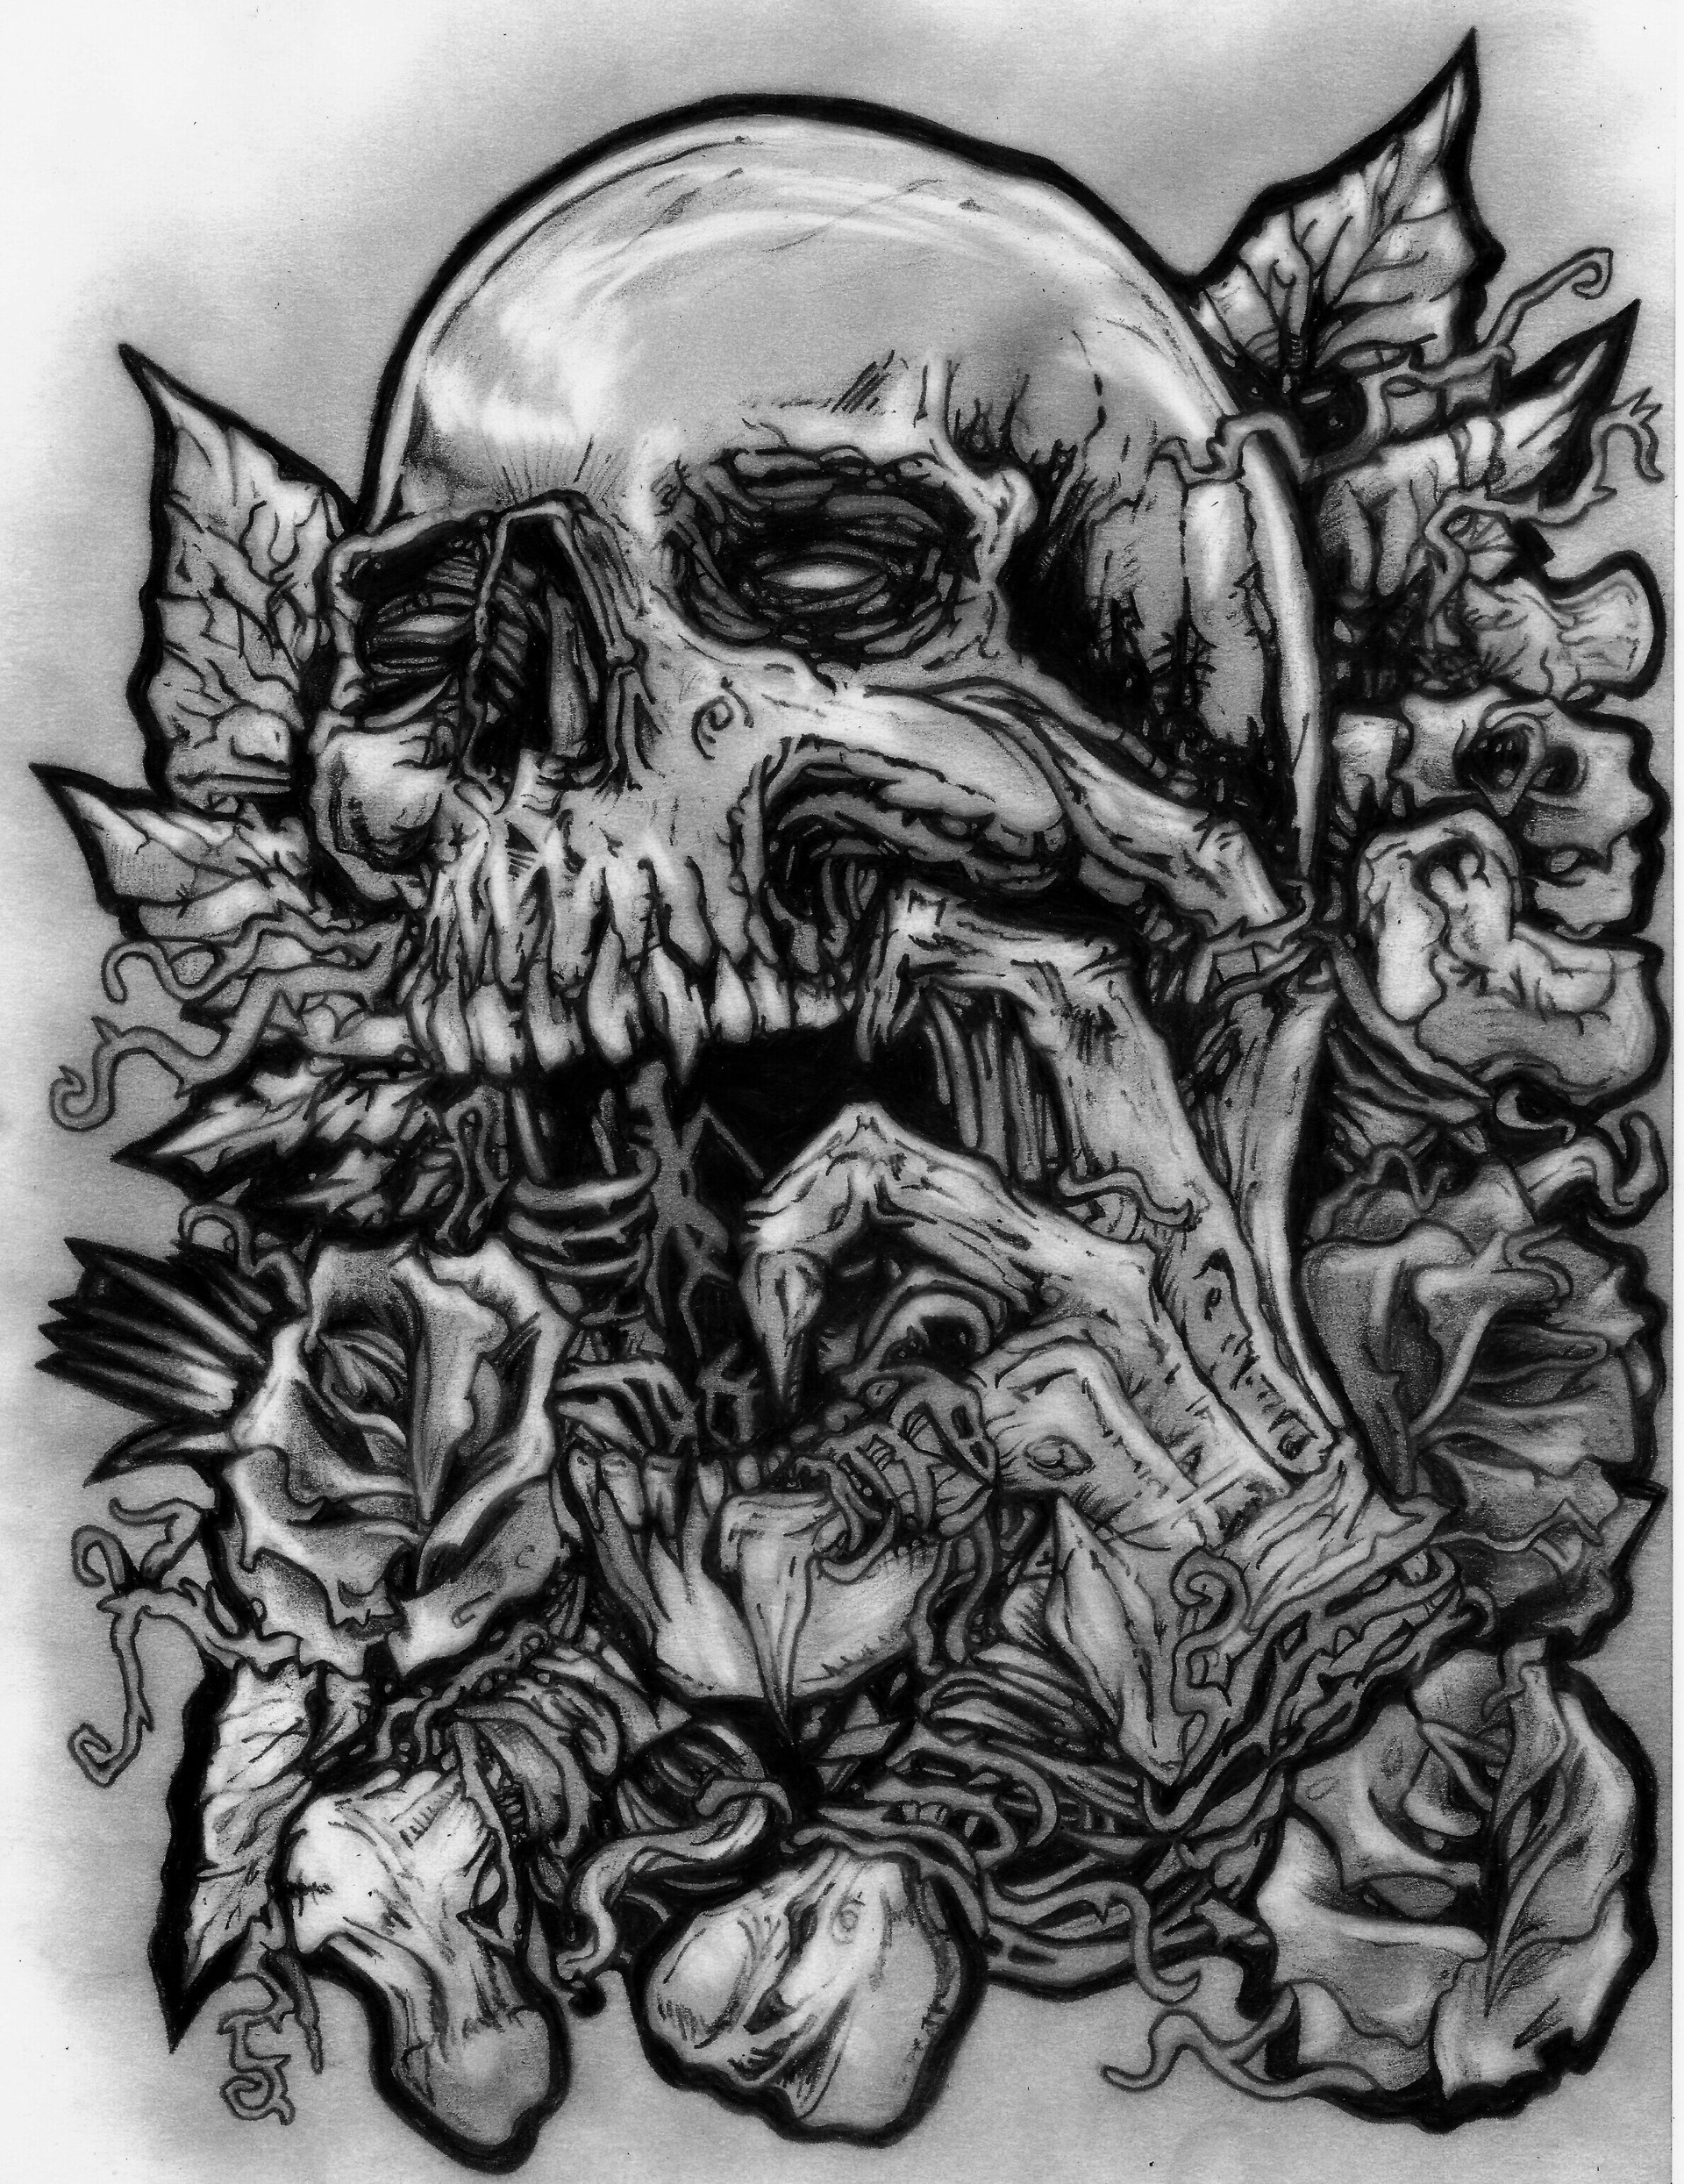 ArtStation - Skull